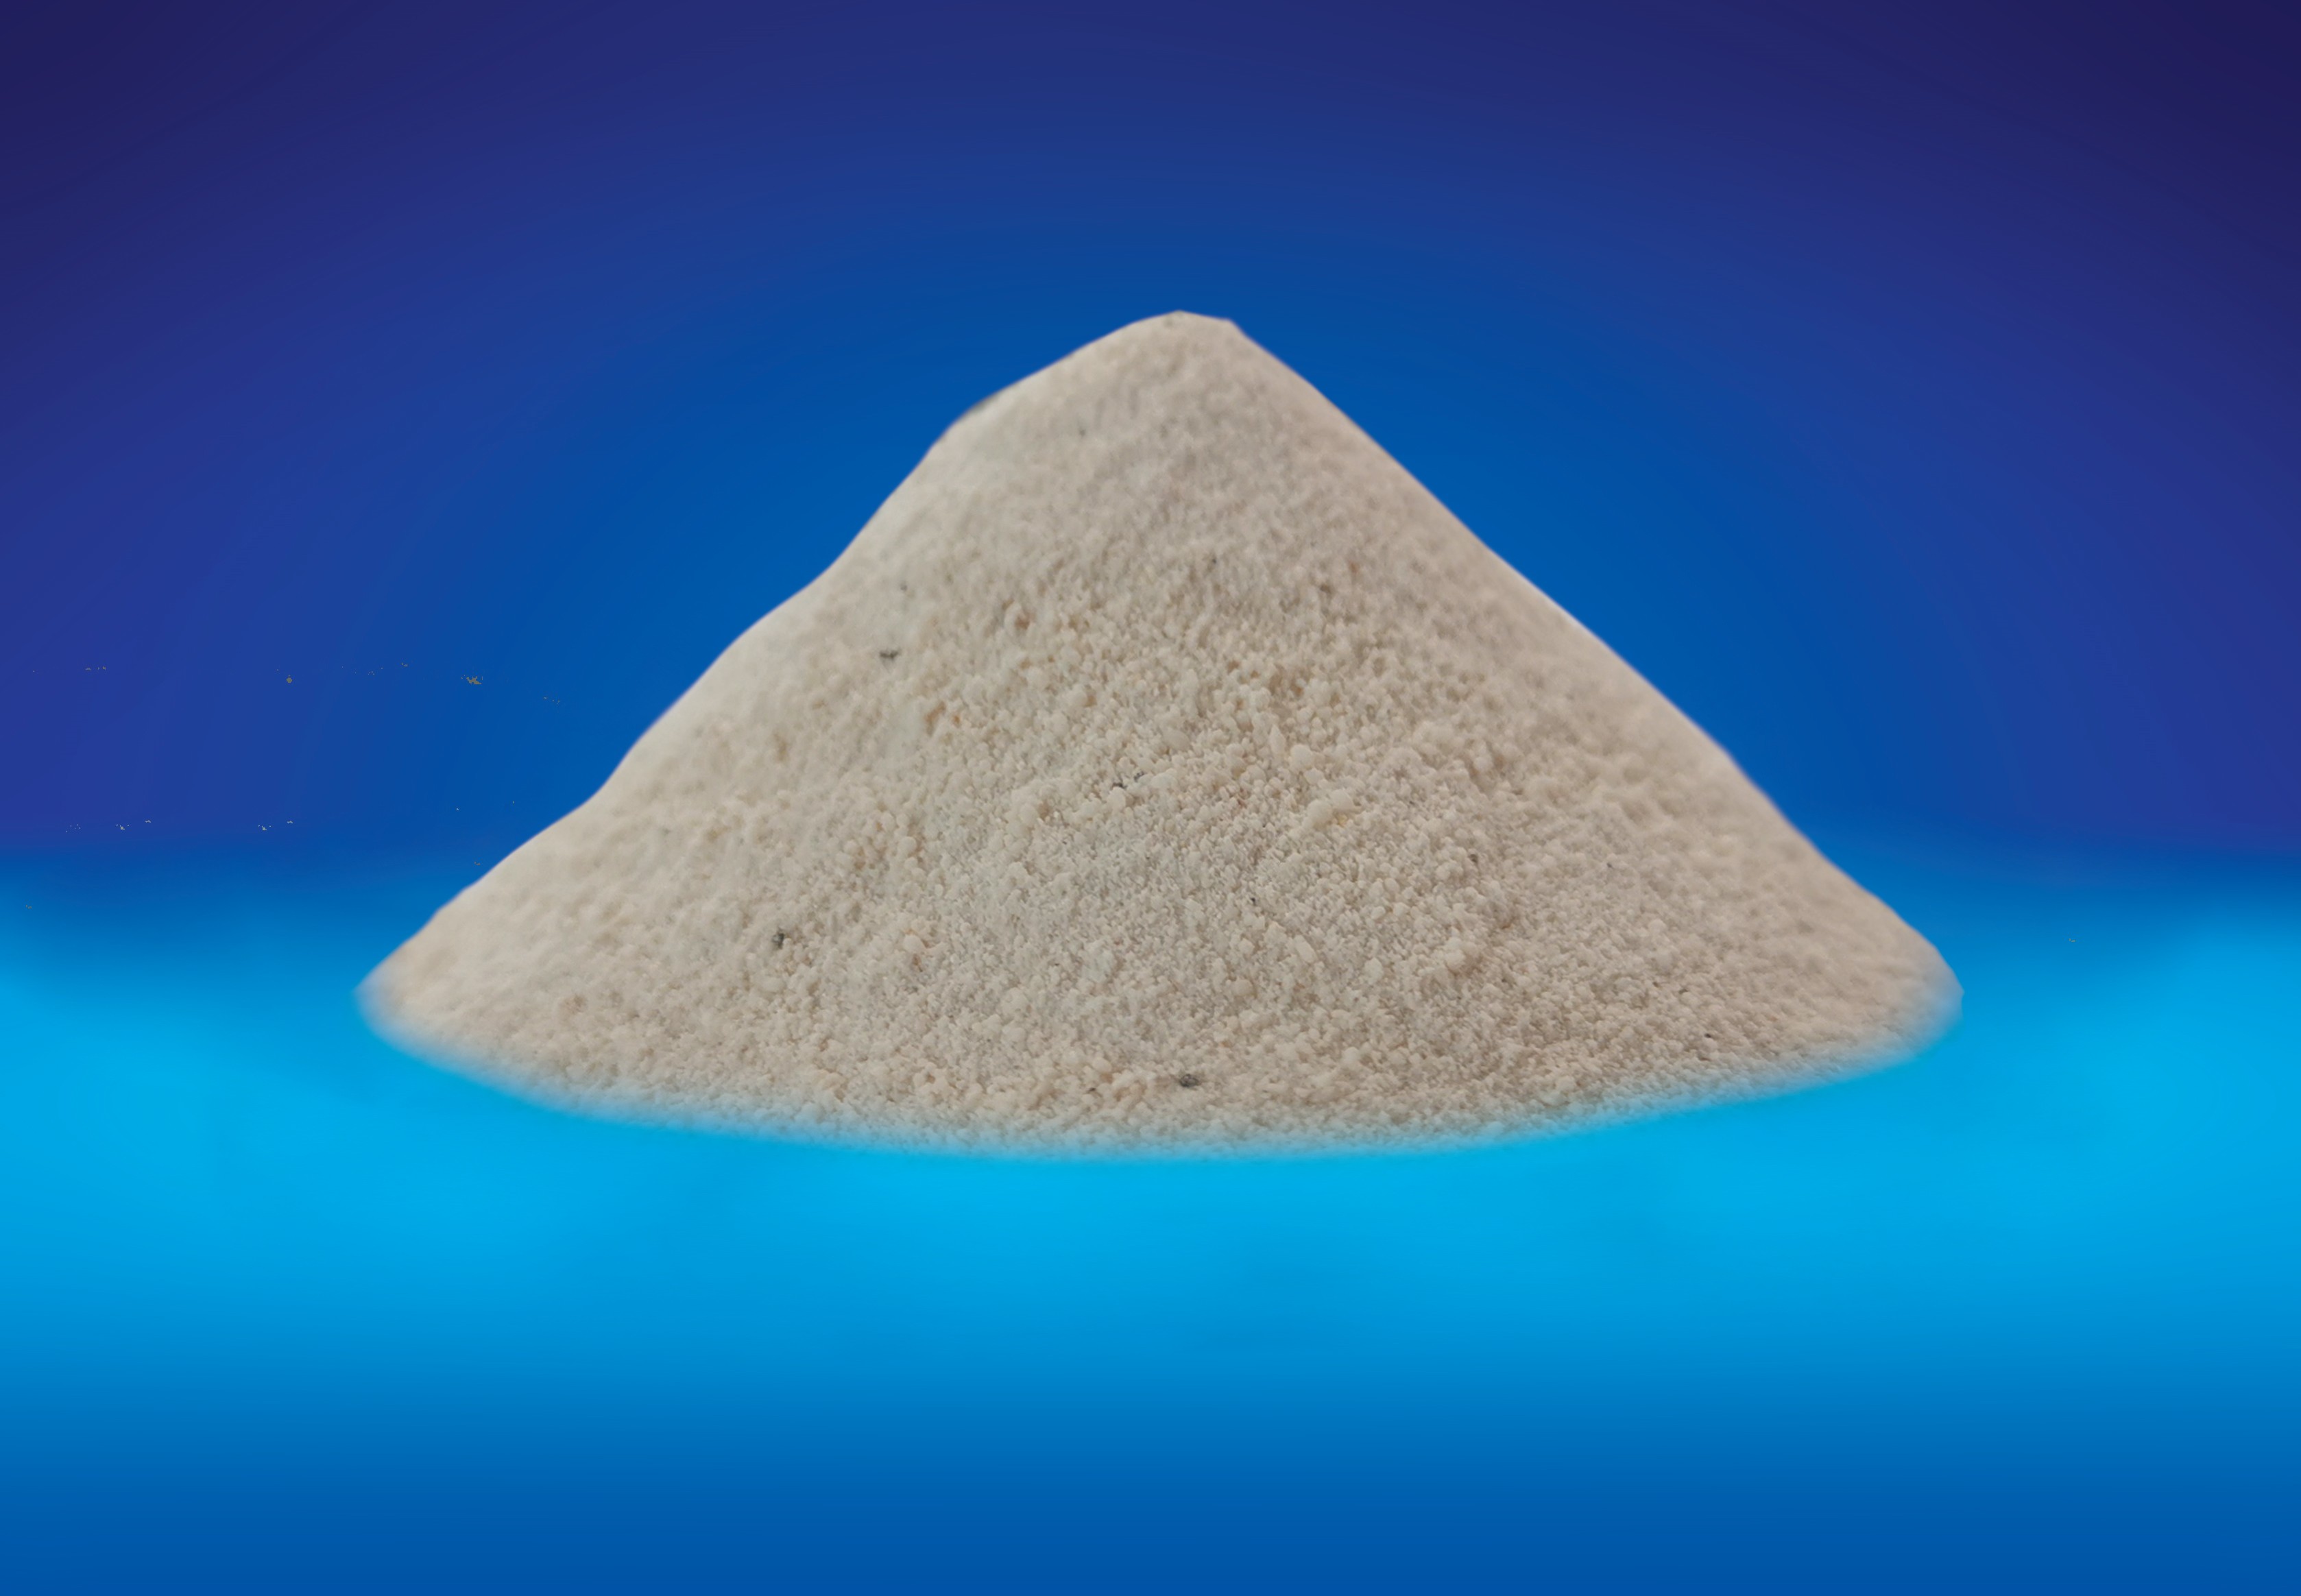 I-Methionine Chelate - Isengezo sokudla kwesilwane se-Manganese Methionine White Powder